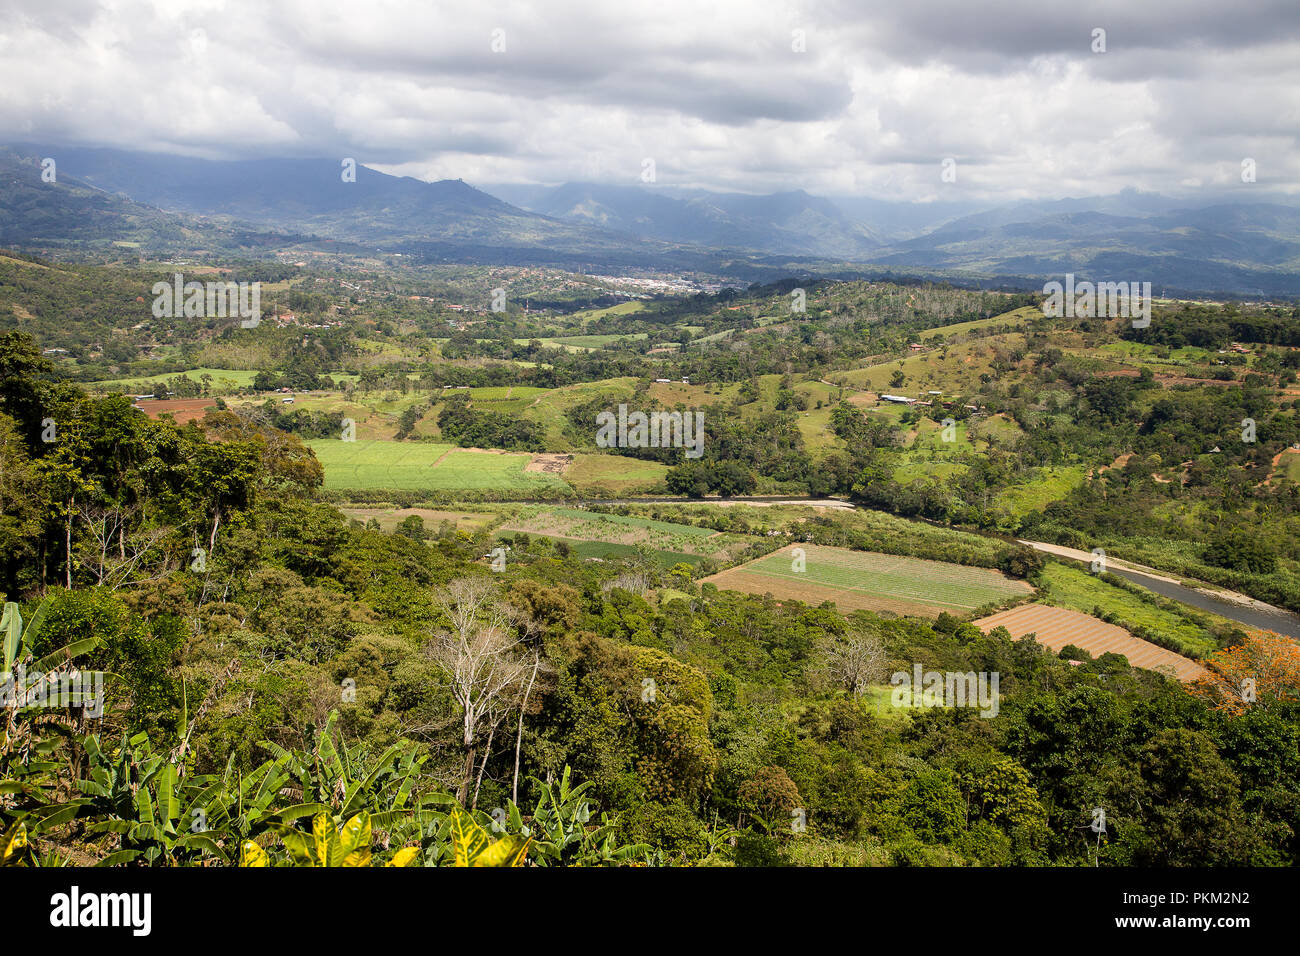 The valley of San Isidro de El General in Costa RIca Stock Photo